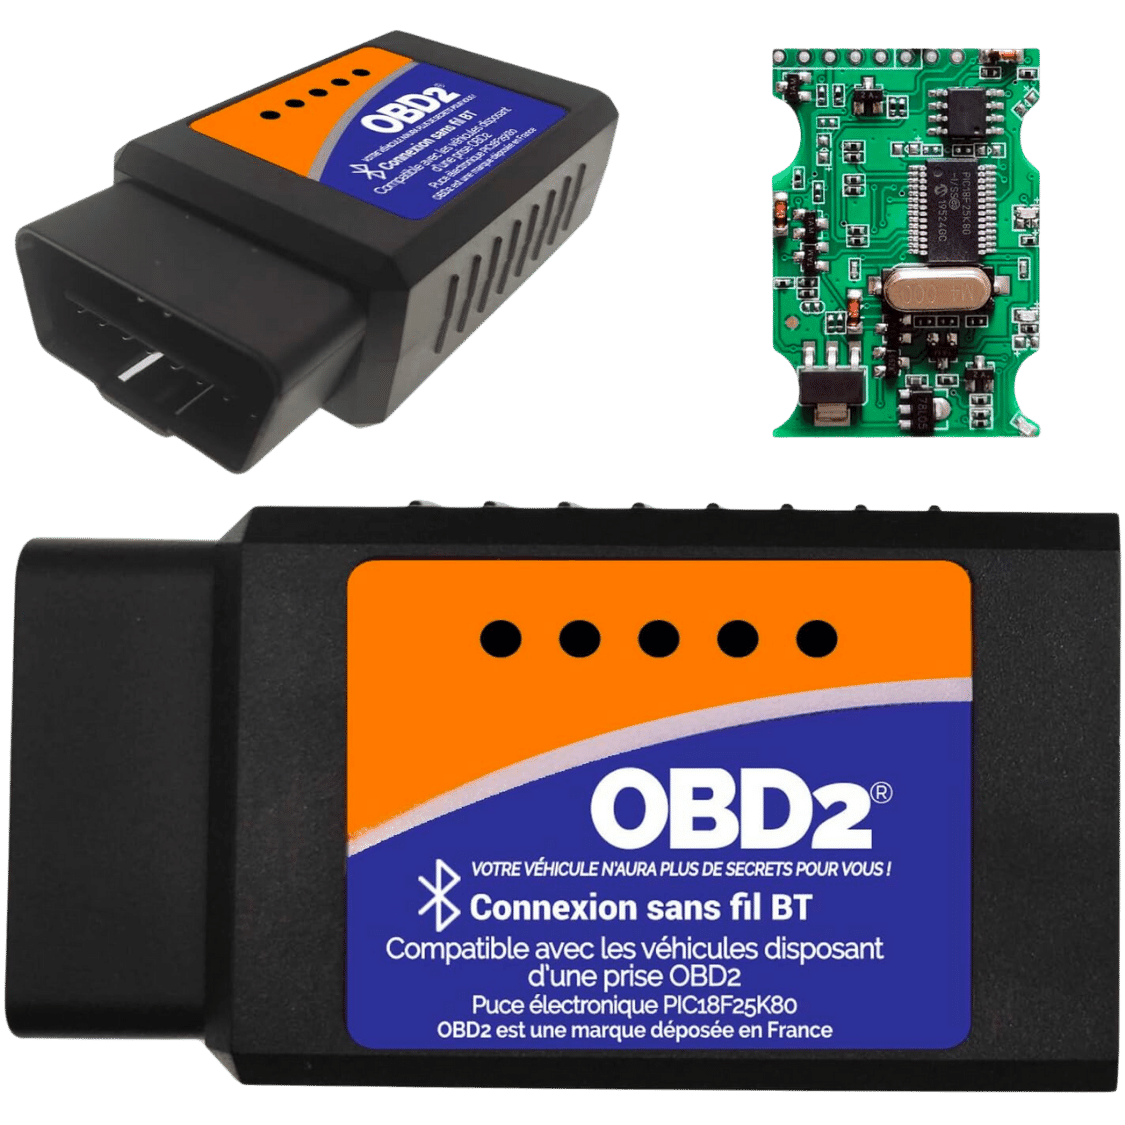 Boitier de diagnostic OBD2 ELM327 V1.5 pic 18f25k80 – Bluetooth 4.0  compatible Iphone android – lit et efface le voyant moteur – OBD2 – Diagnostic  automobile et voyant moteur